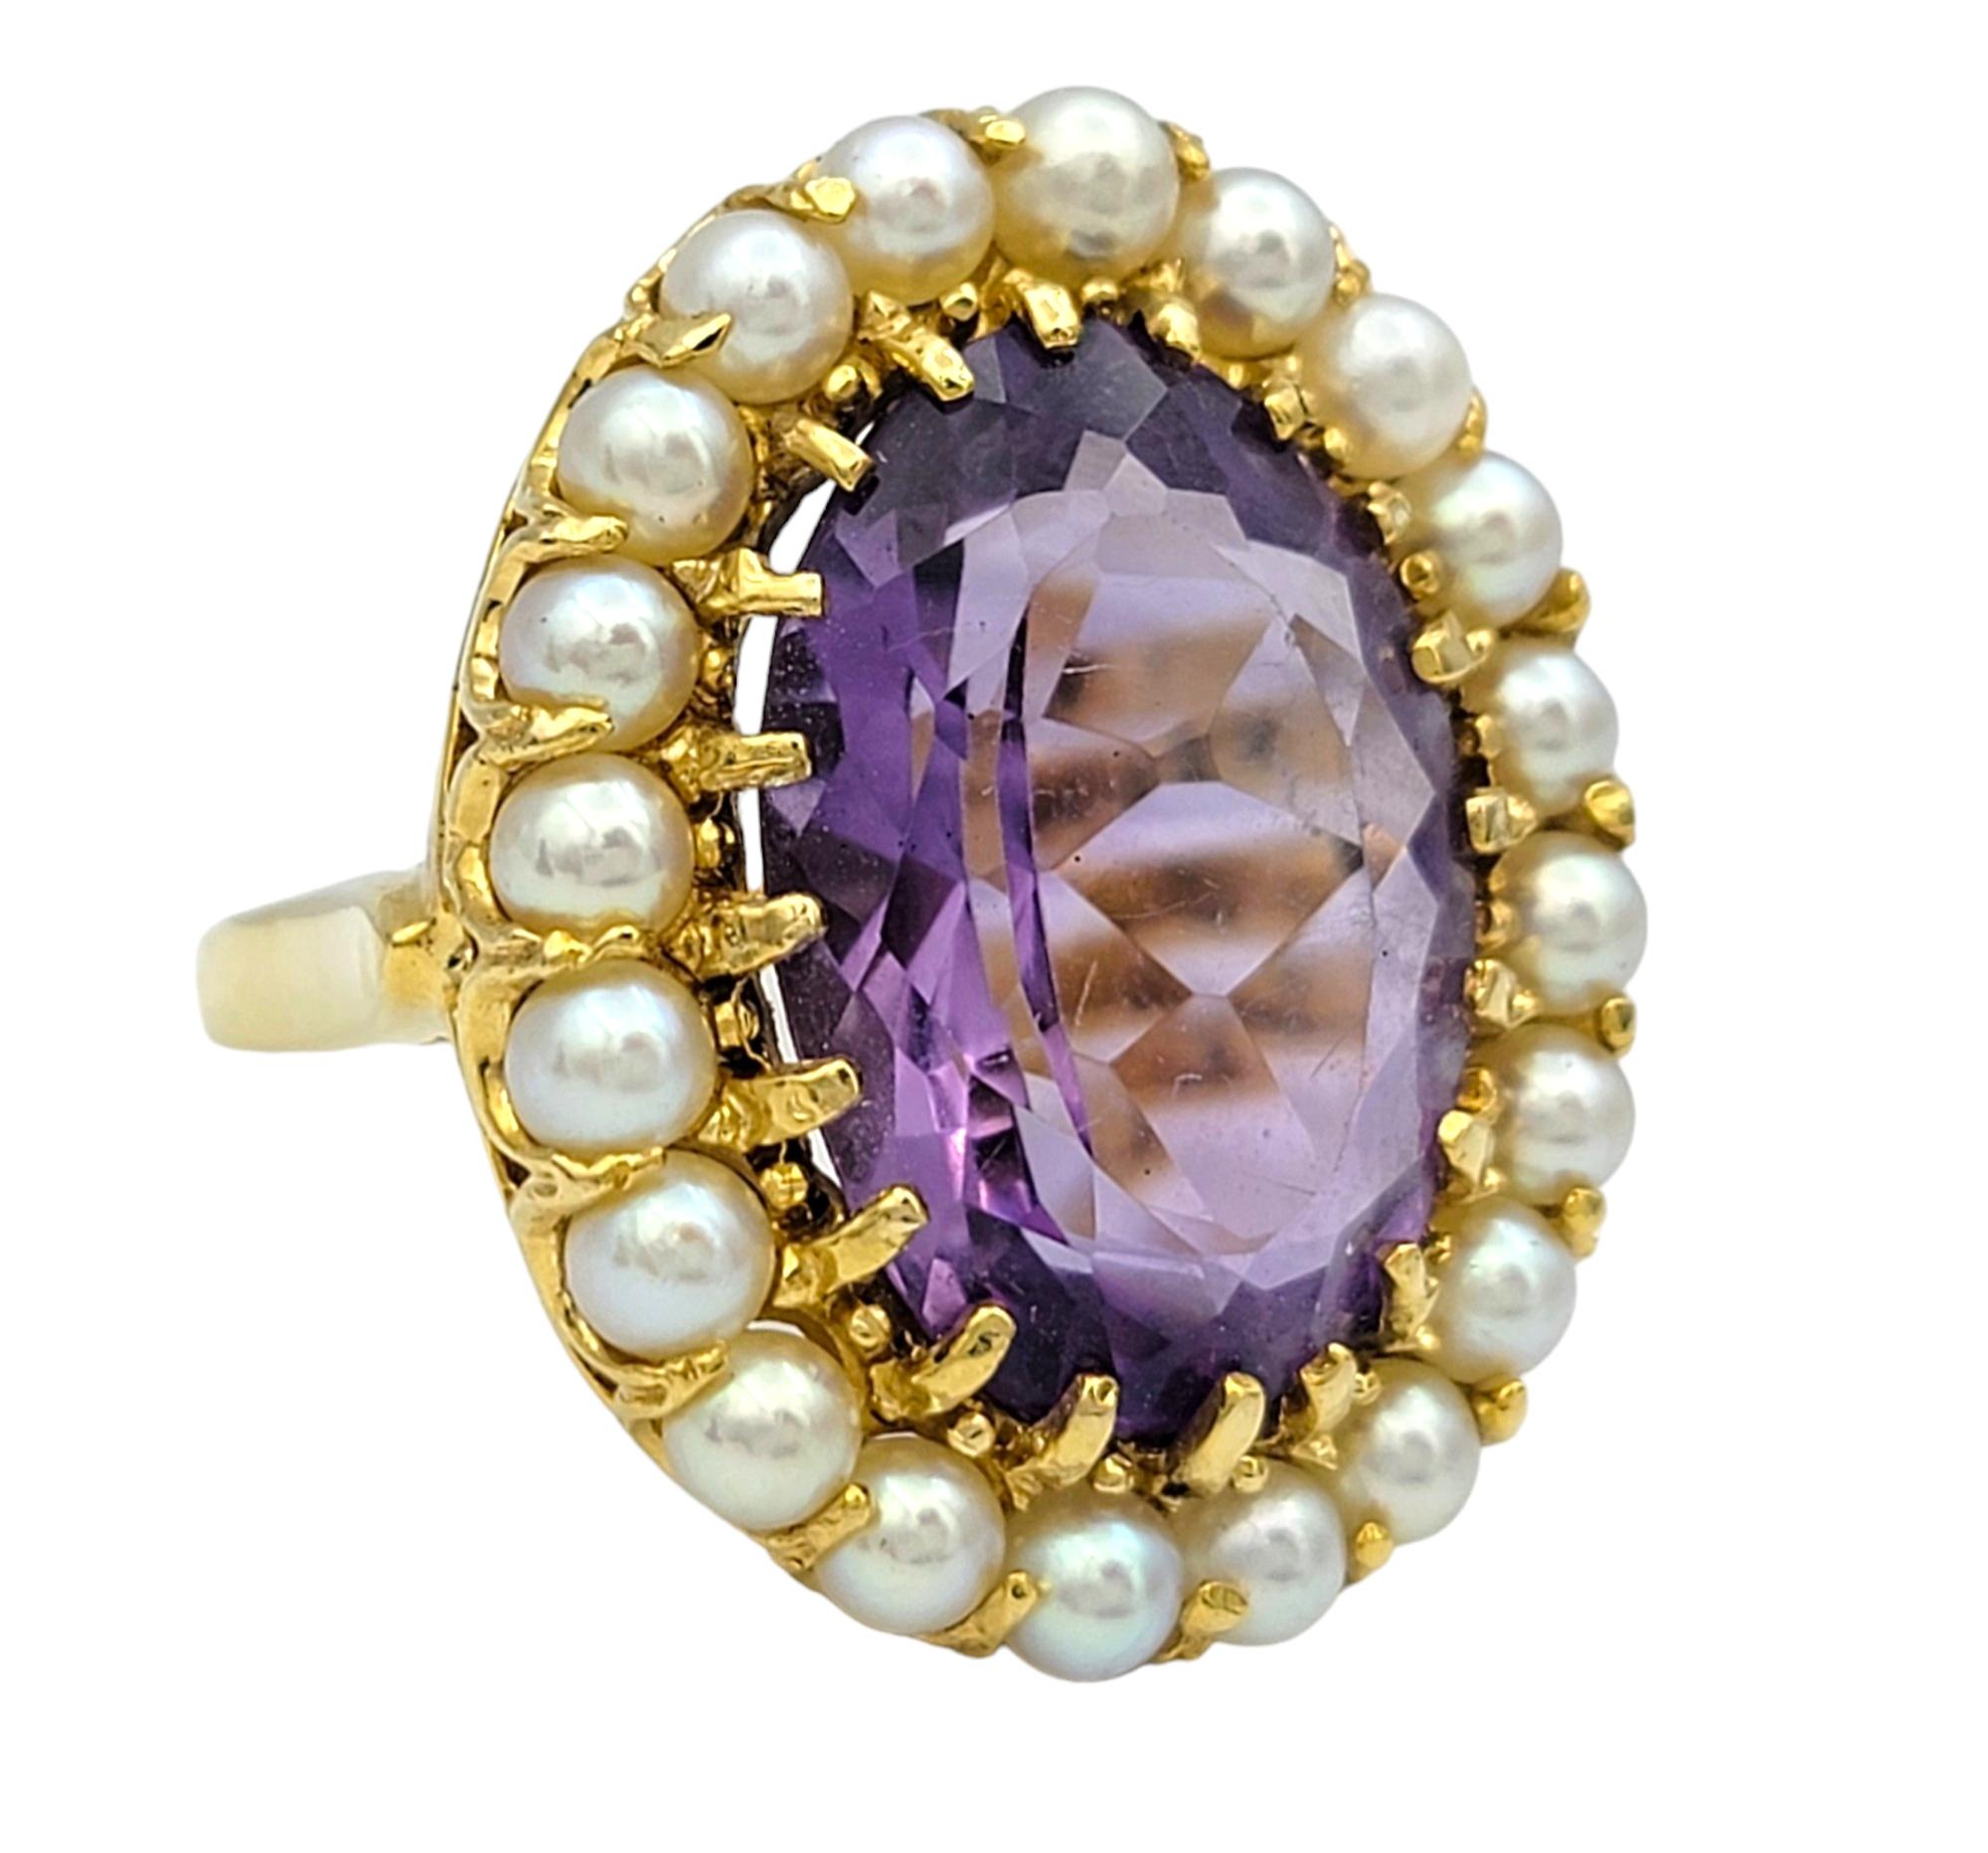 Ring Größe: 8.5

In der Mitte dieses prächtigen Rings befindet sich ein großer ovaler violetter Amethyst, der mit seinem reichen Farbton Eleganz und Raffinesse ausstrahlt. Der Amethyst ist von einem zarten Halo aus glänzenden Saatperlen umgeben, die